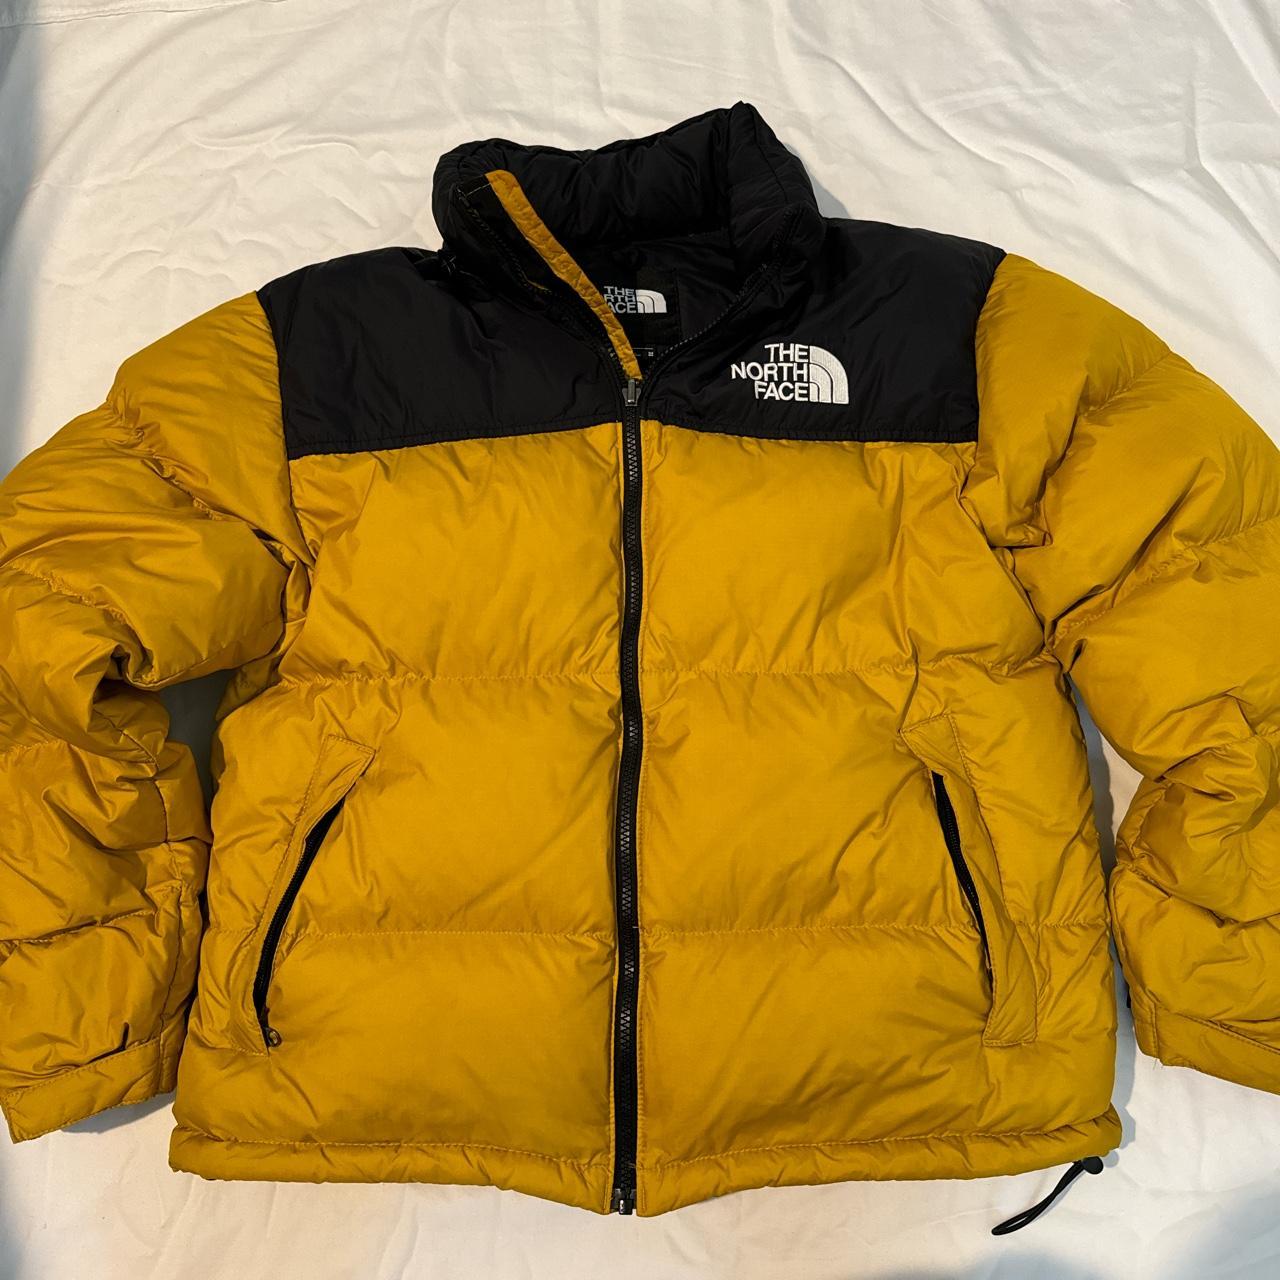 The North Face Men’s 1996 Retro Nuptse jacket in... - Depop